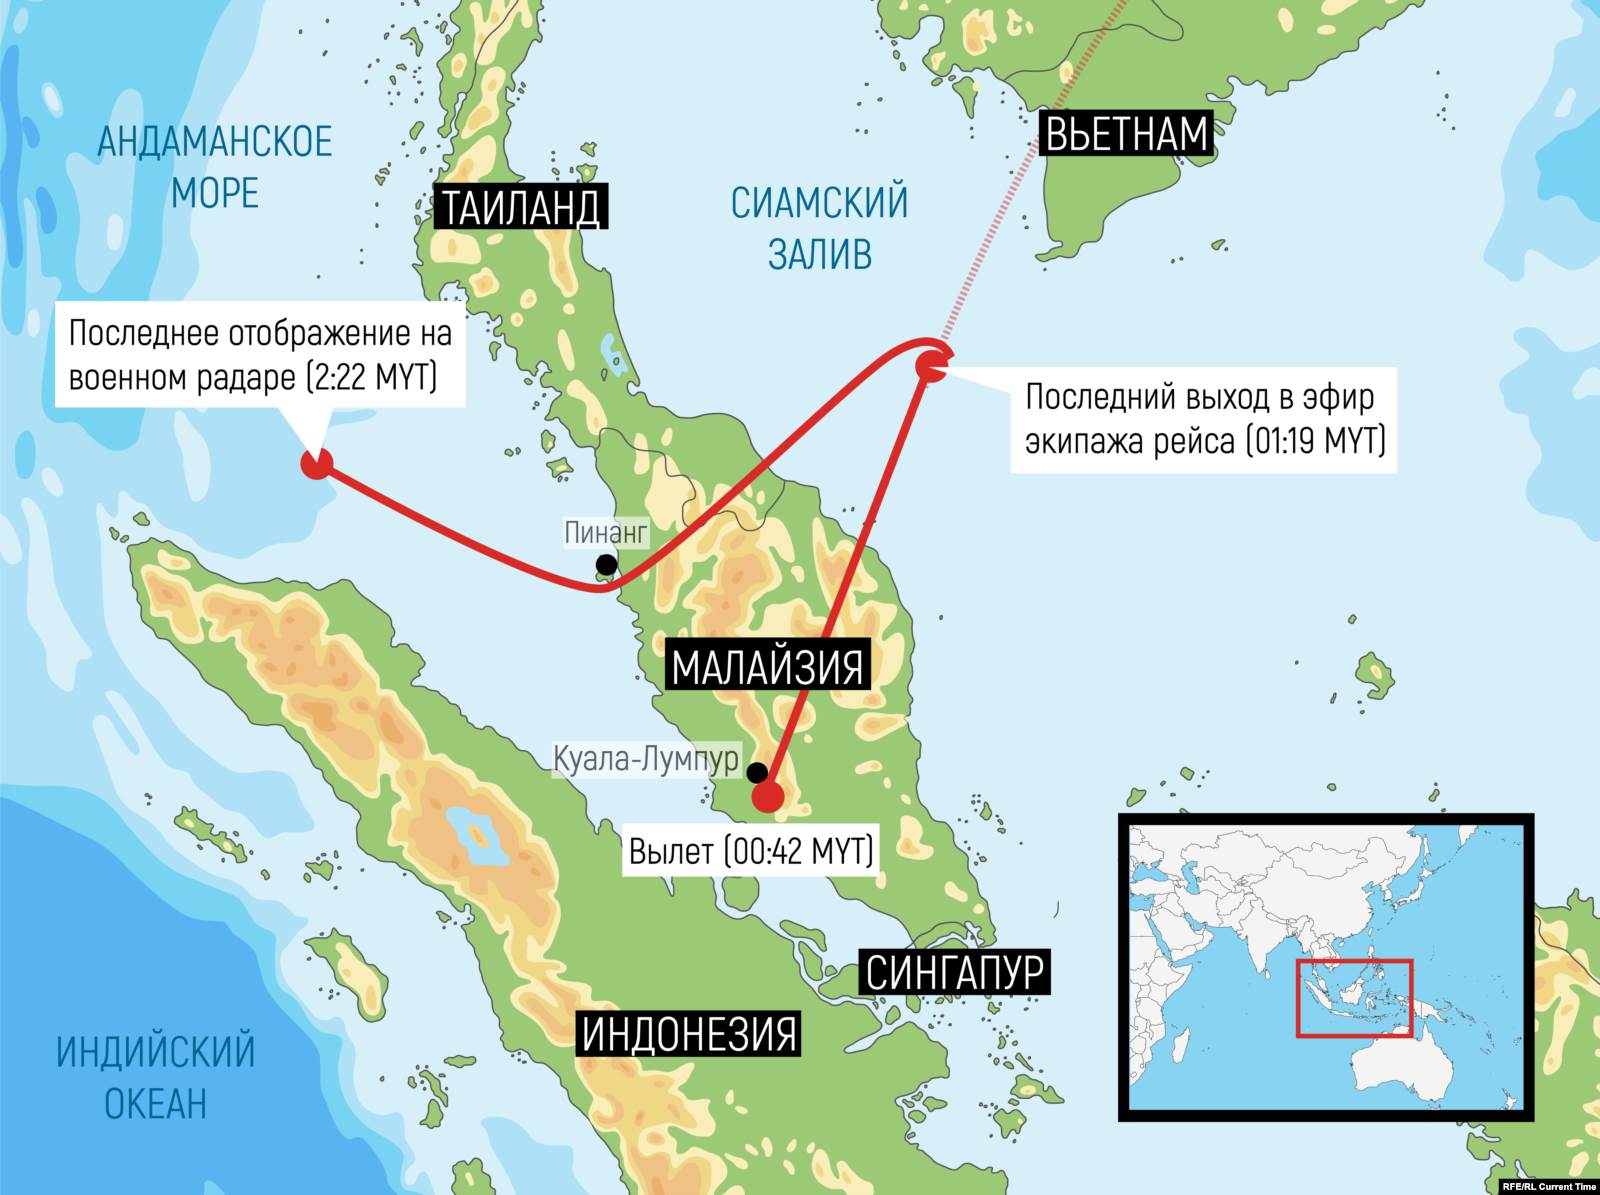 Данные о траектории MH370, полученные с радаров. Иллюстрация: Любовь Моисеенко для Настоящего Времени